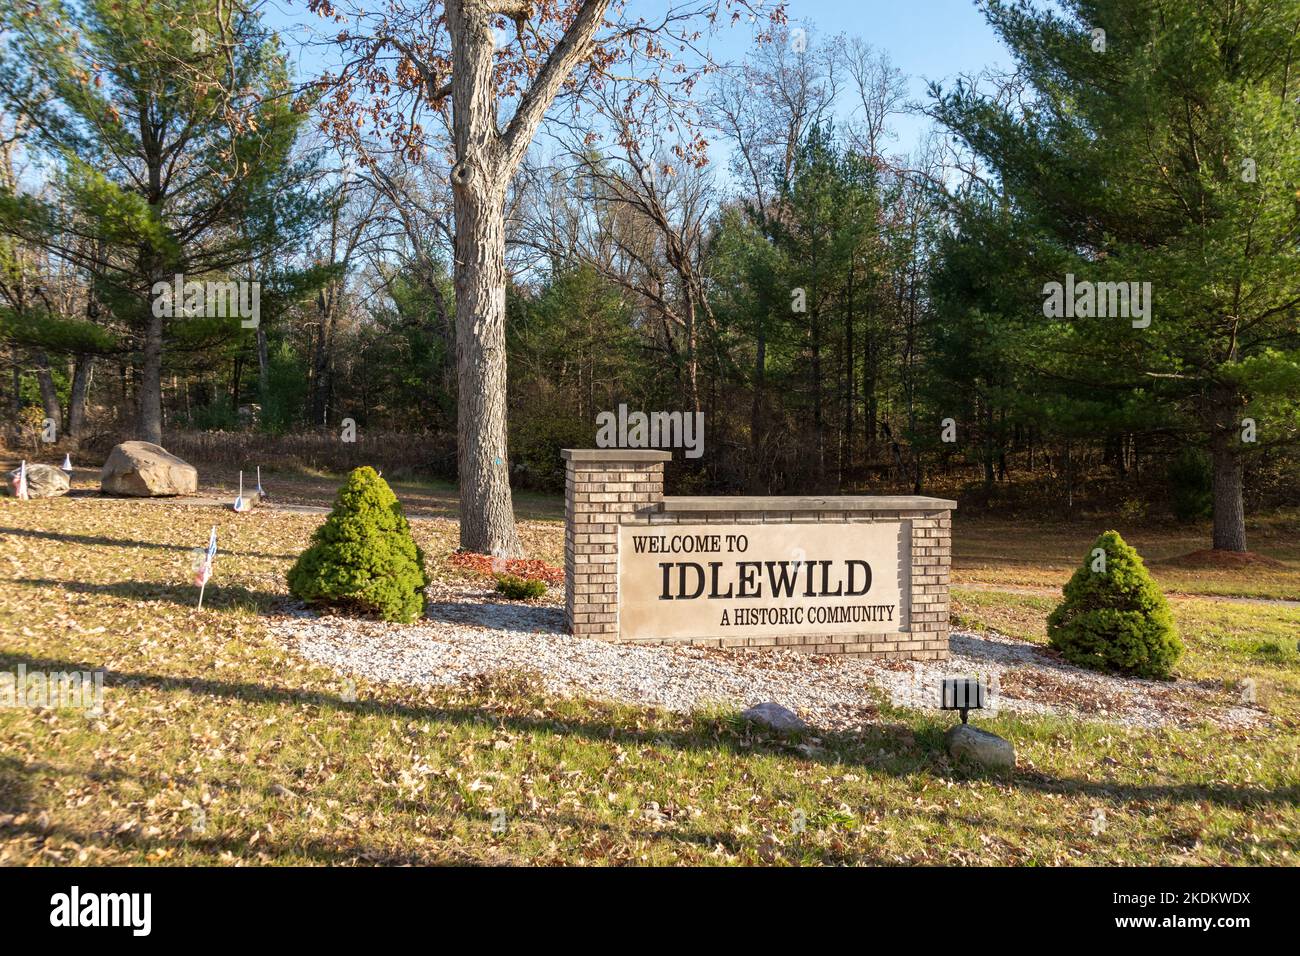 Idlewild, Michigan - l'entrata modena di Idlewild, una cittadina turistica popolare tra afroamericani durante gli anni in cui la segregazione era la norma. Afte Foto Stock